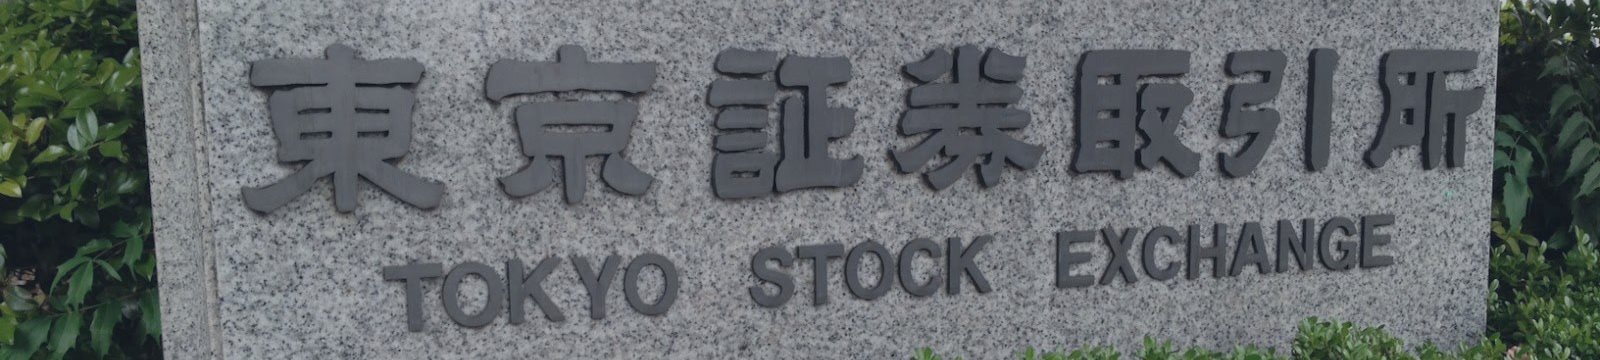 Япония сегодня стала камнем на шее азиатских рынков